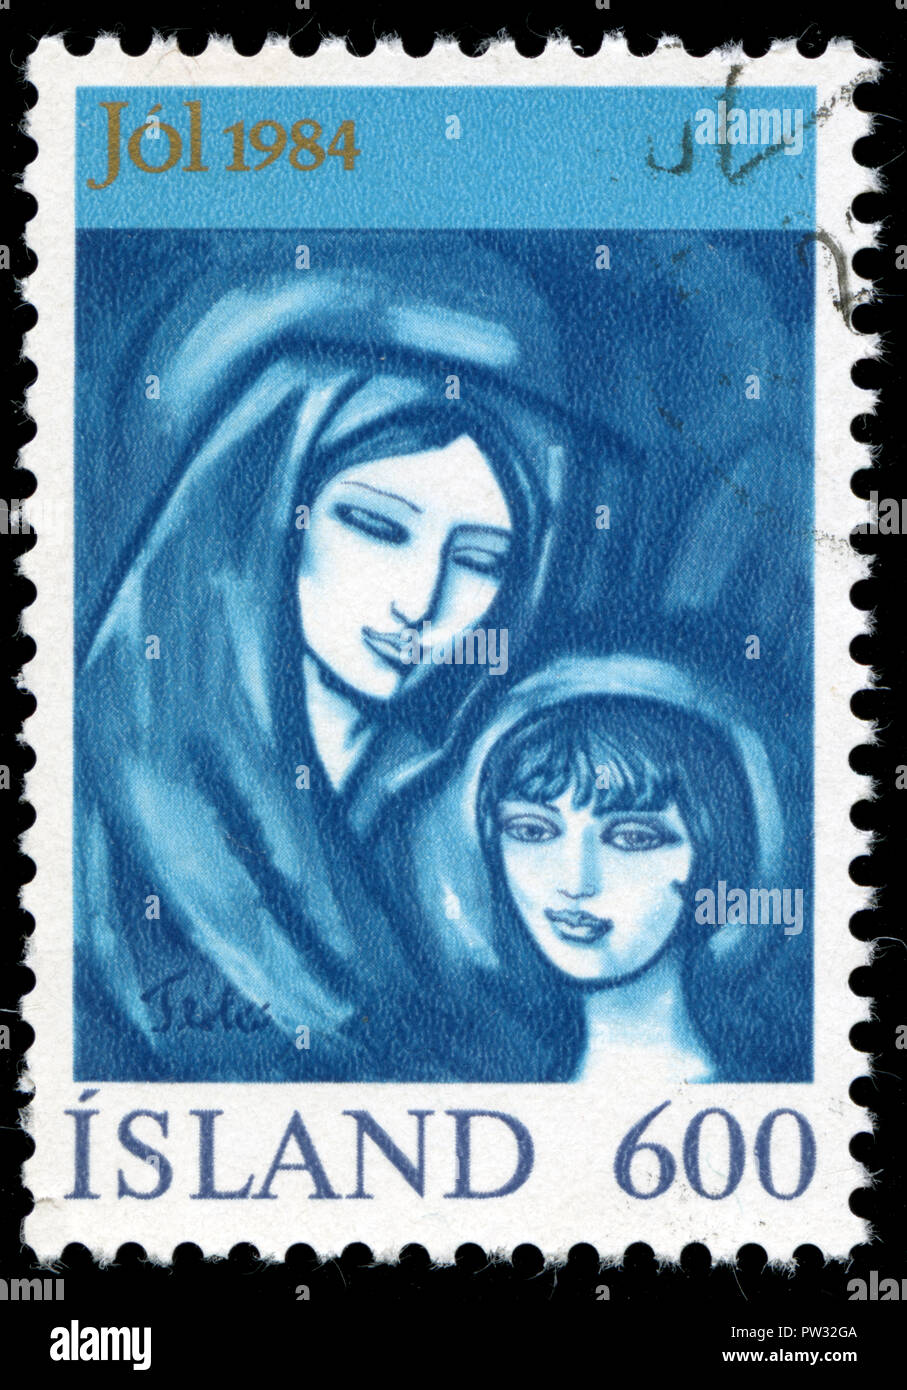 Sello postal de Islandia en la Navidad serie publicada en 1984 Foto de stock